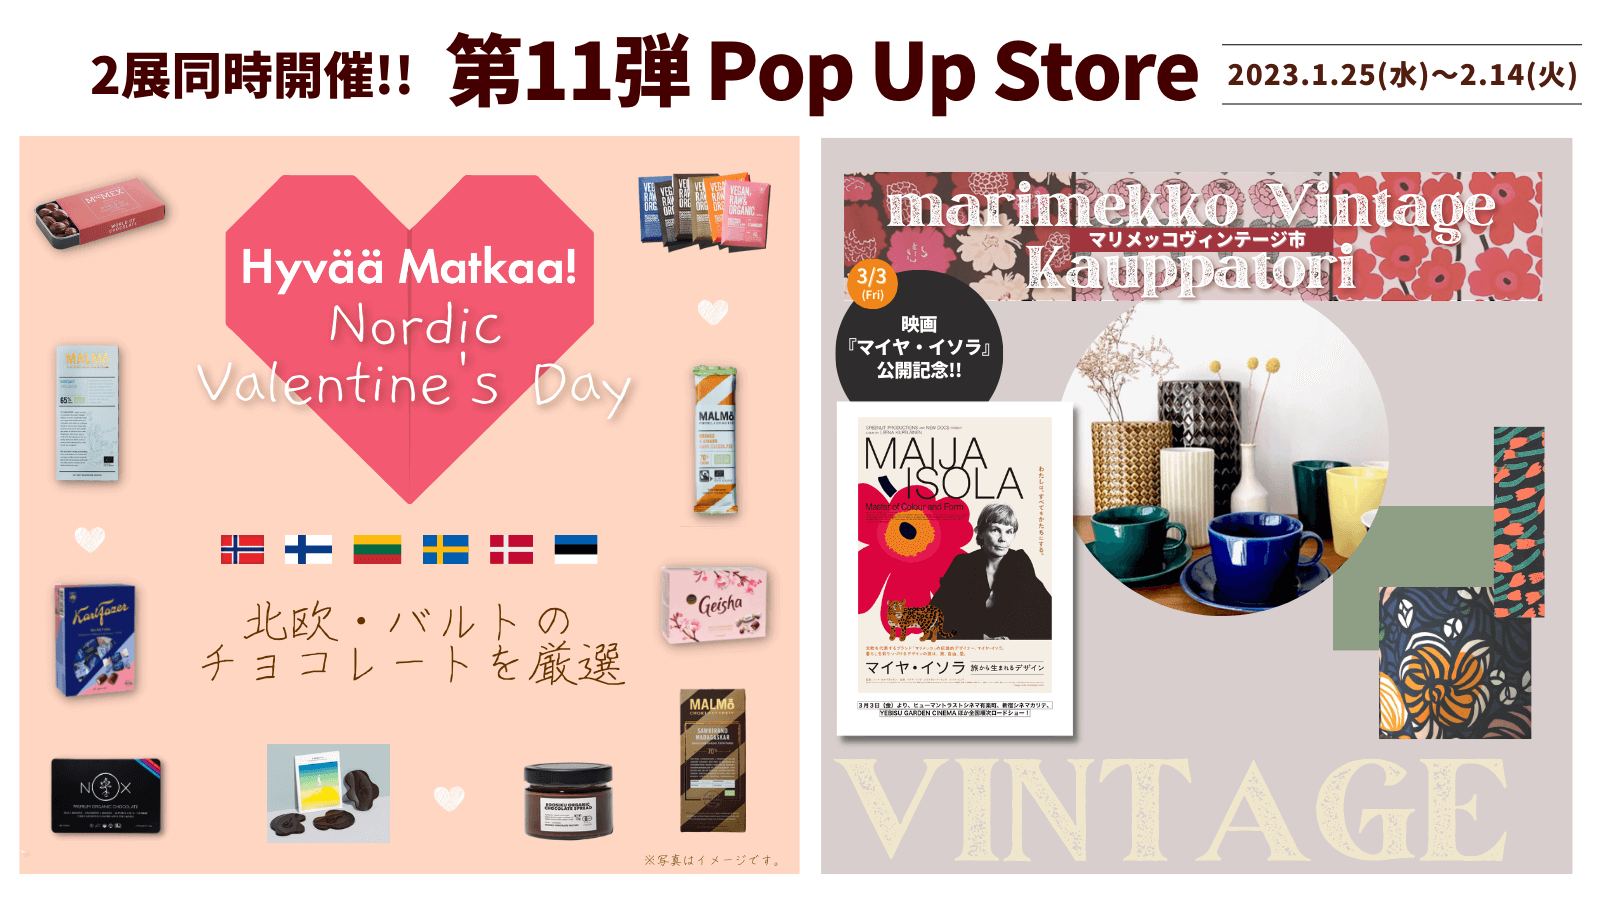 Hyvää Matkaa!」第11弾Pop Up Store 『Hyvää Matkaa!の Nordic ...